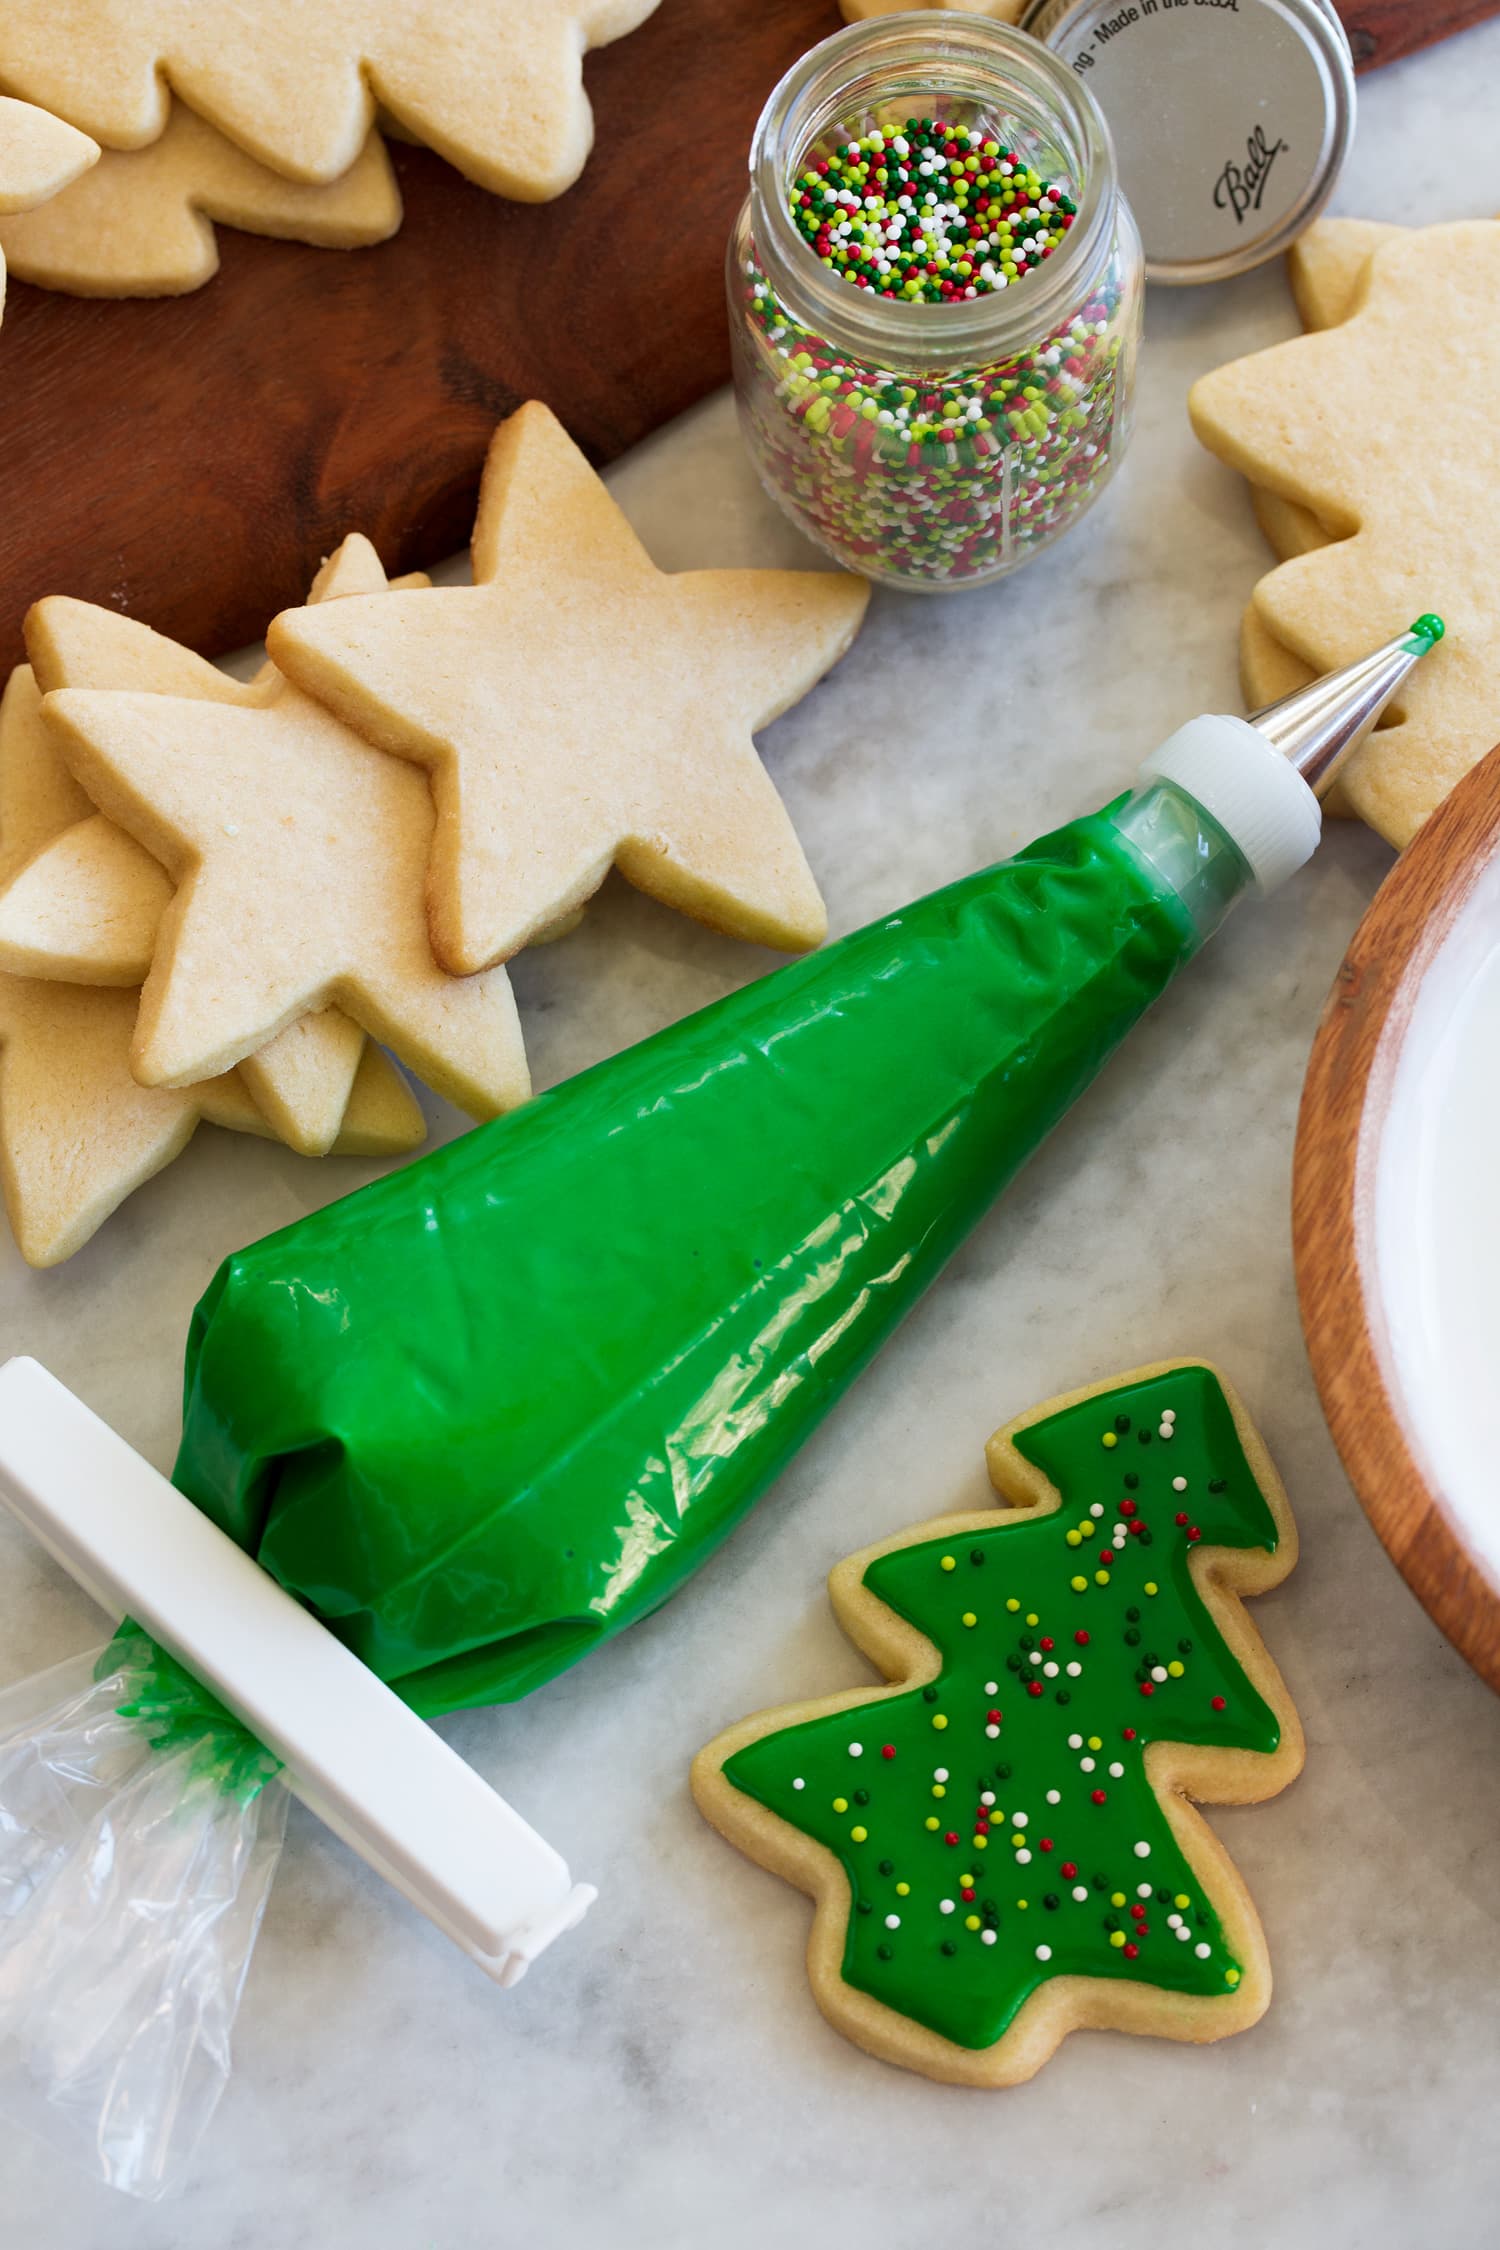 Glassa di biscotti di zucchero in una tasca da pasticcere.  La glassa è colorata di verde e accanto c'è un biscotto ritagliato che mostra come decorare con glassa e codette.